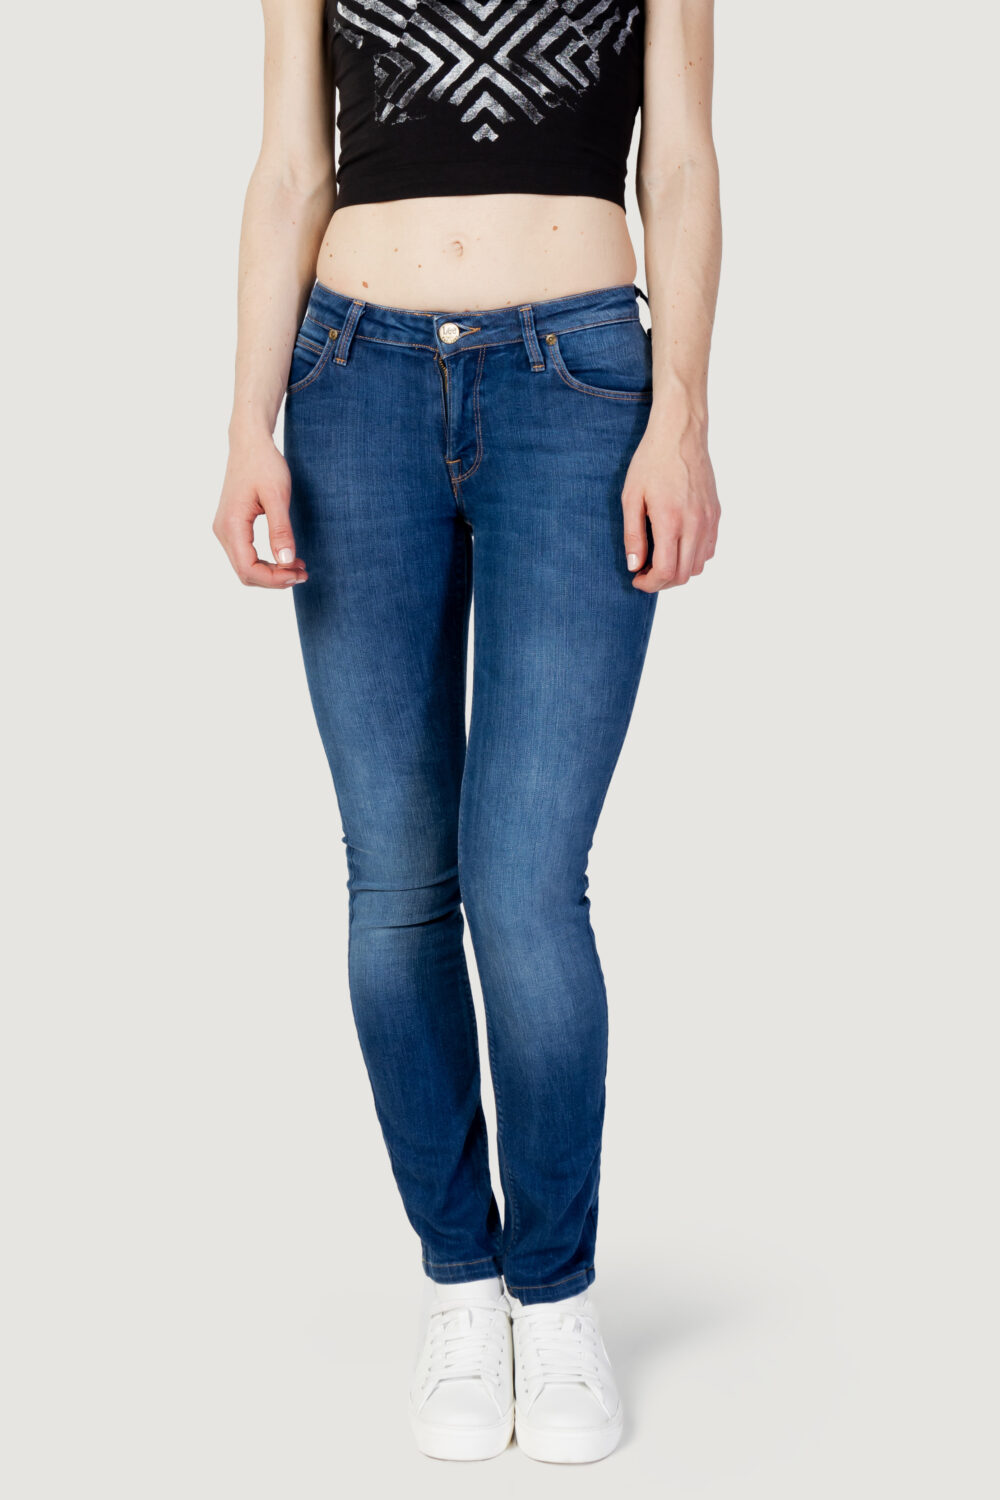 Jeans skinny Lee marlin Denim - Foto 5